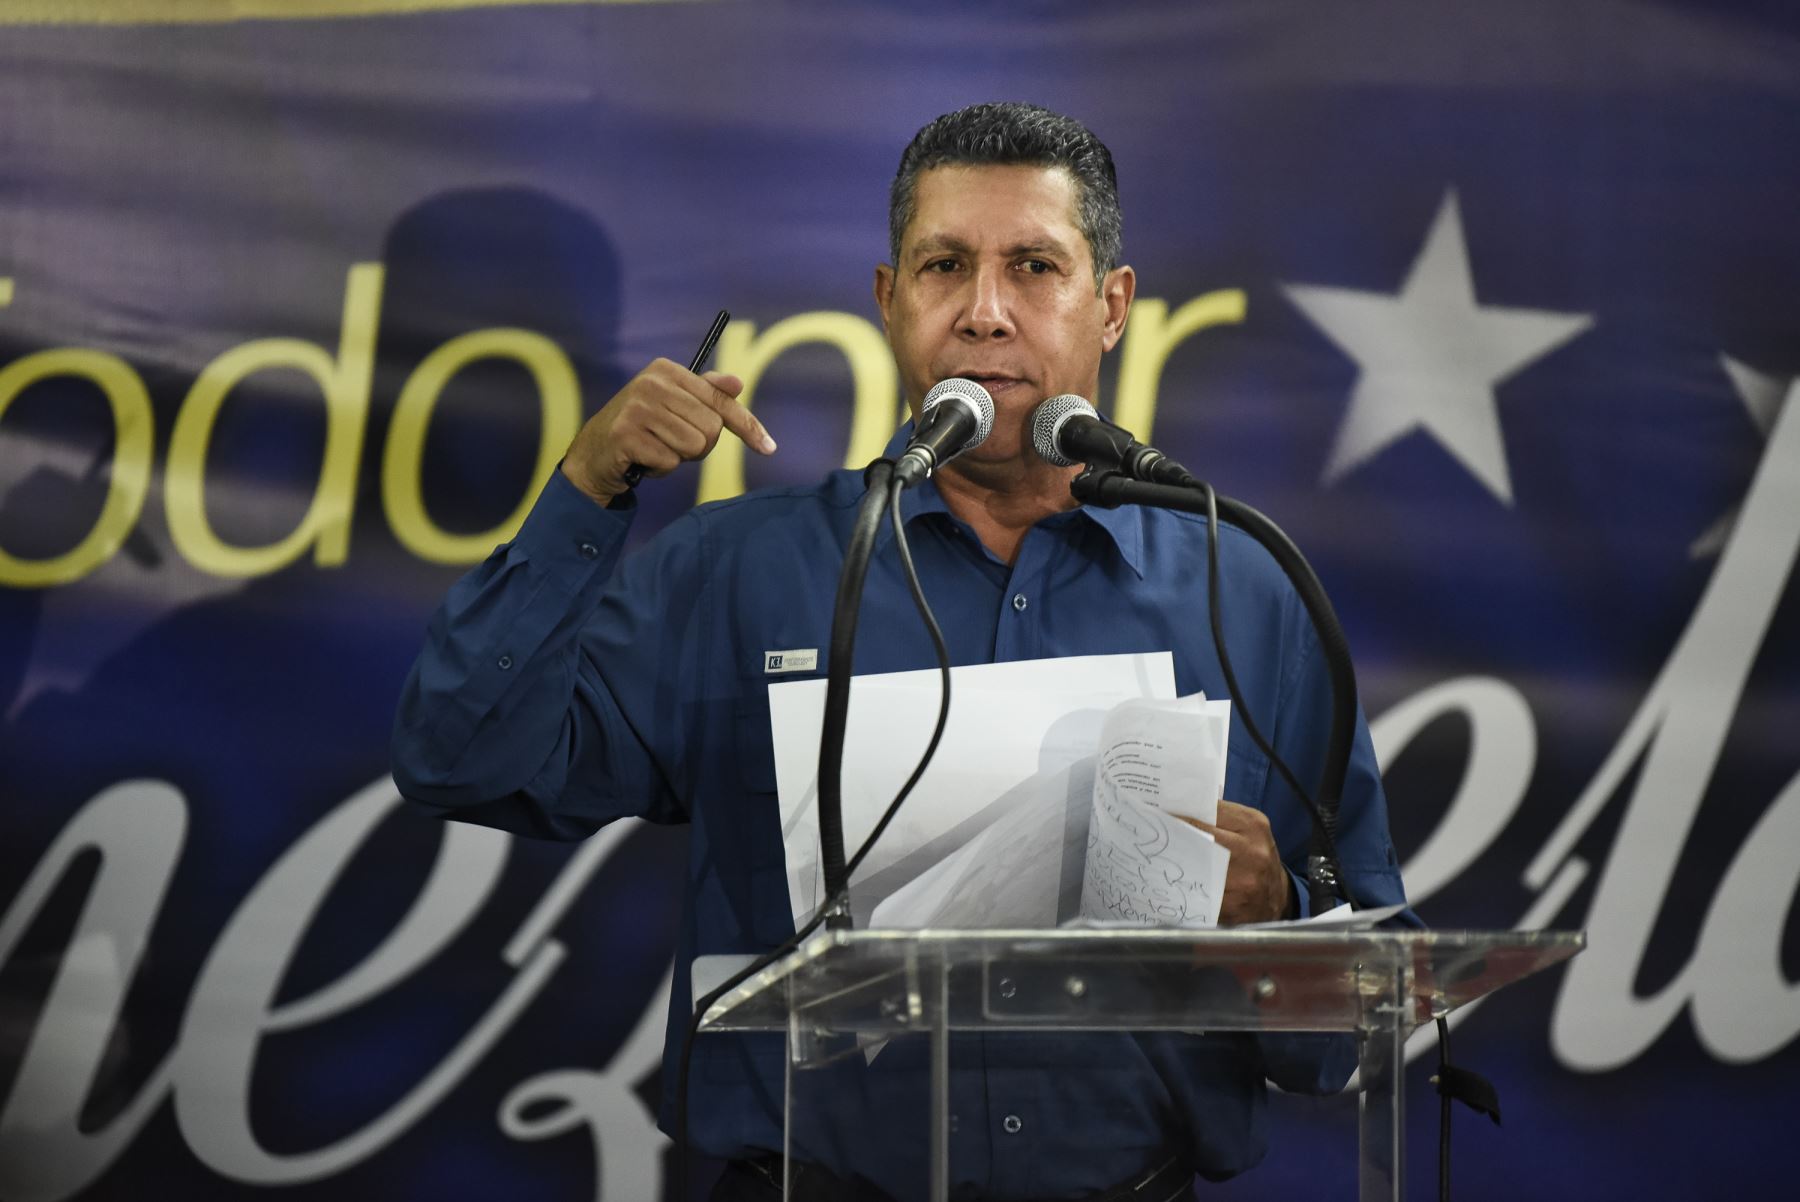 El candidato presidencial opositor venezolano Henri Falcón habla durante una conferencia de prensa luego de que el Consejo Nacional Electoral (CNE) anunciara los resultados de la votación en Venezuela.Foto:AFP